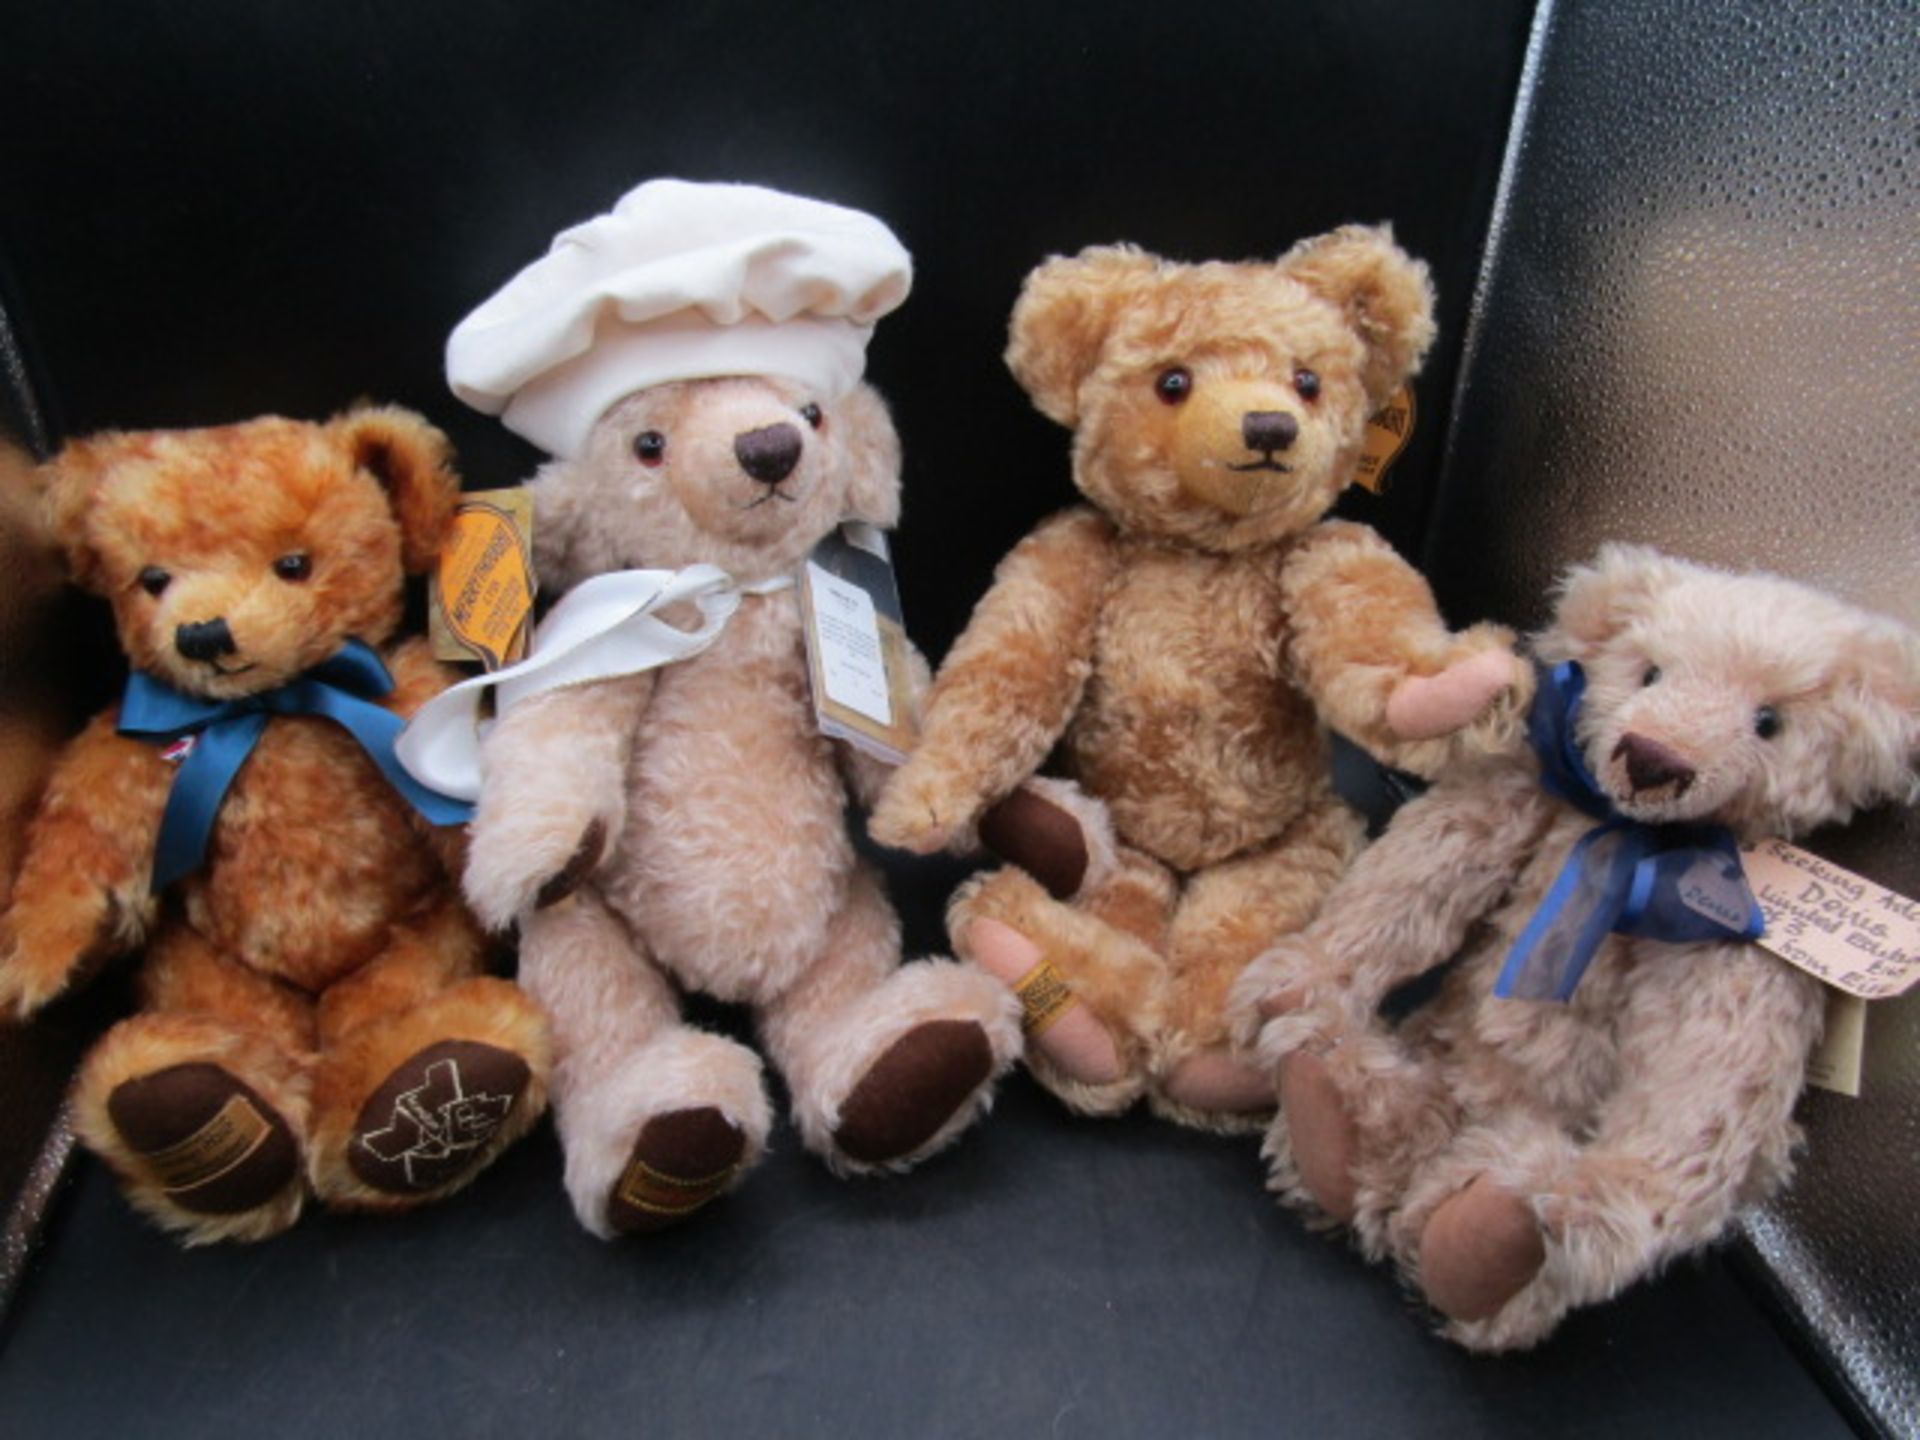 Teddy Bear Orphanage bear and 3 Merrythought bears